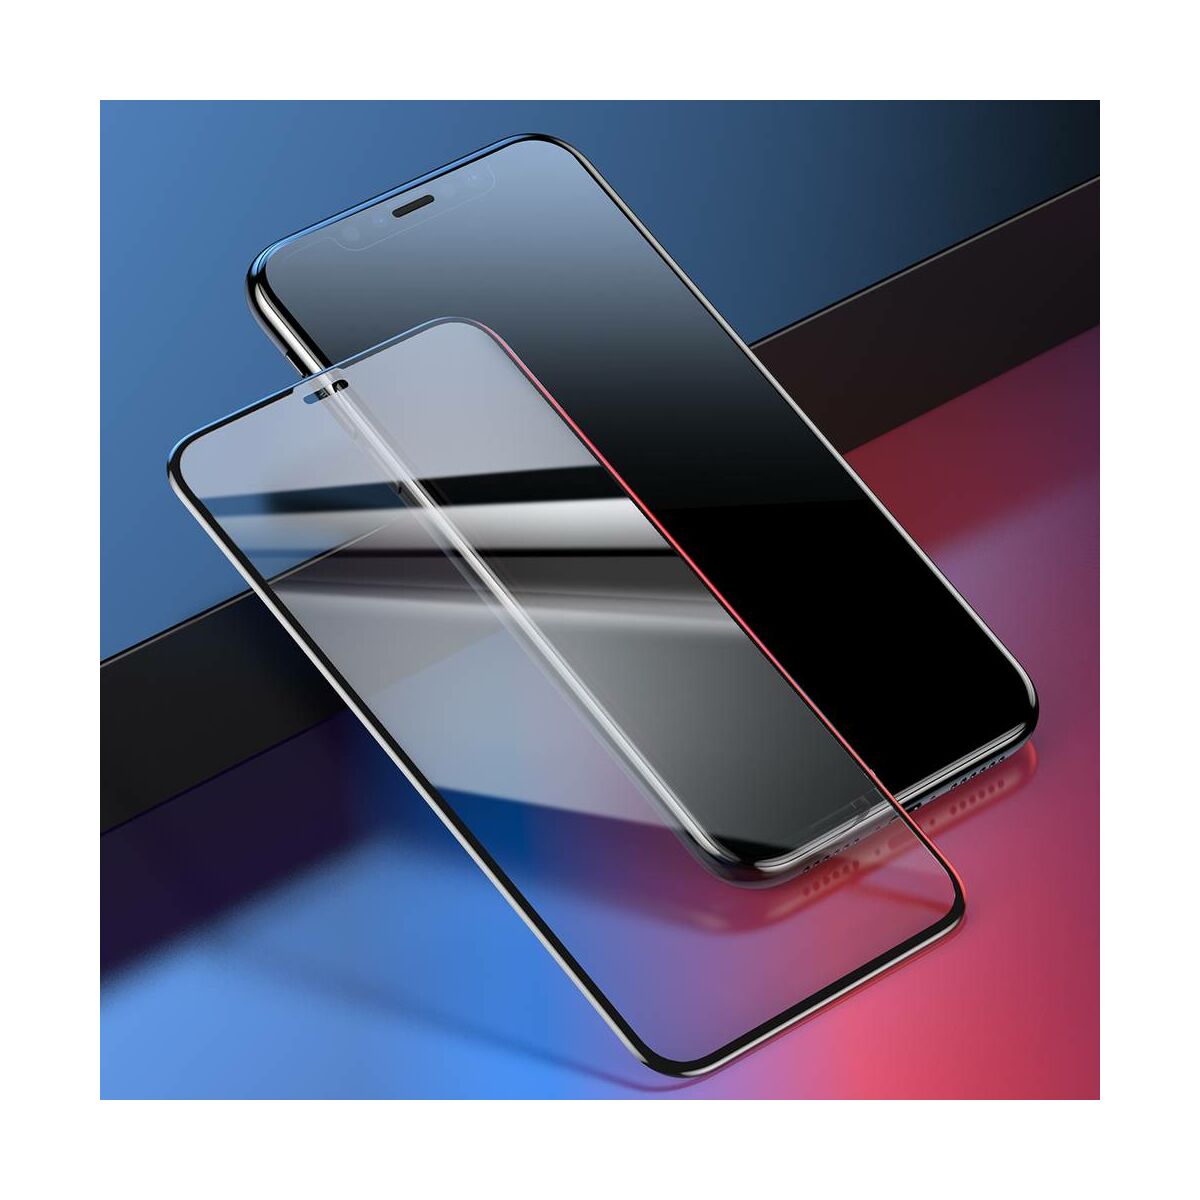 Baseus iPhone XS Max (6.5") 0.2 mm, teljes felületre edzett üveg kijelzővédő fólia, fekete (SGAPIPH65-TN01)